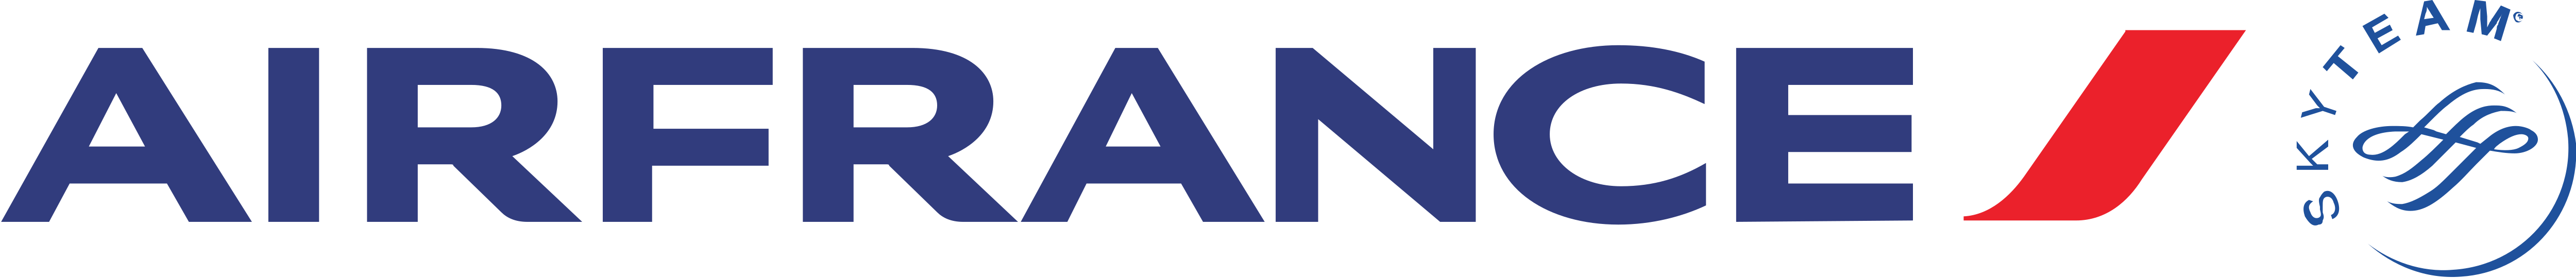 Air France Logo - Air France – Logos Download